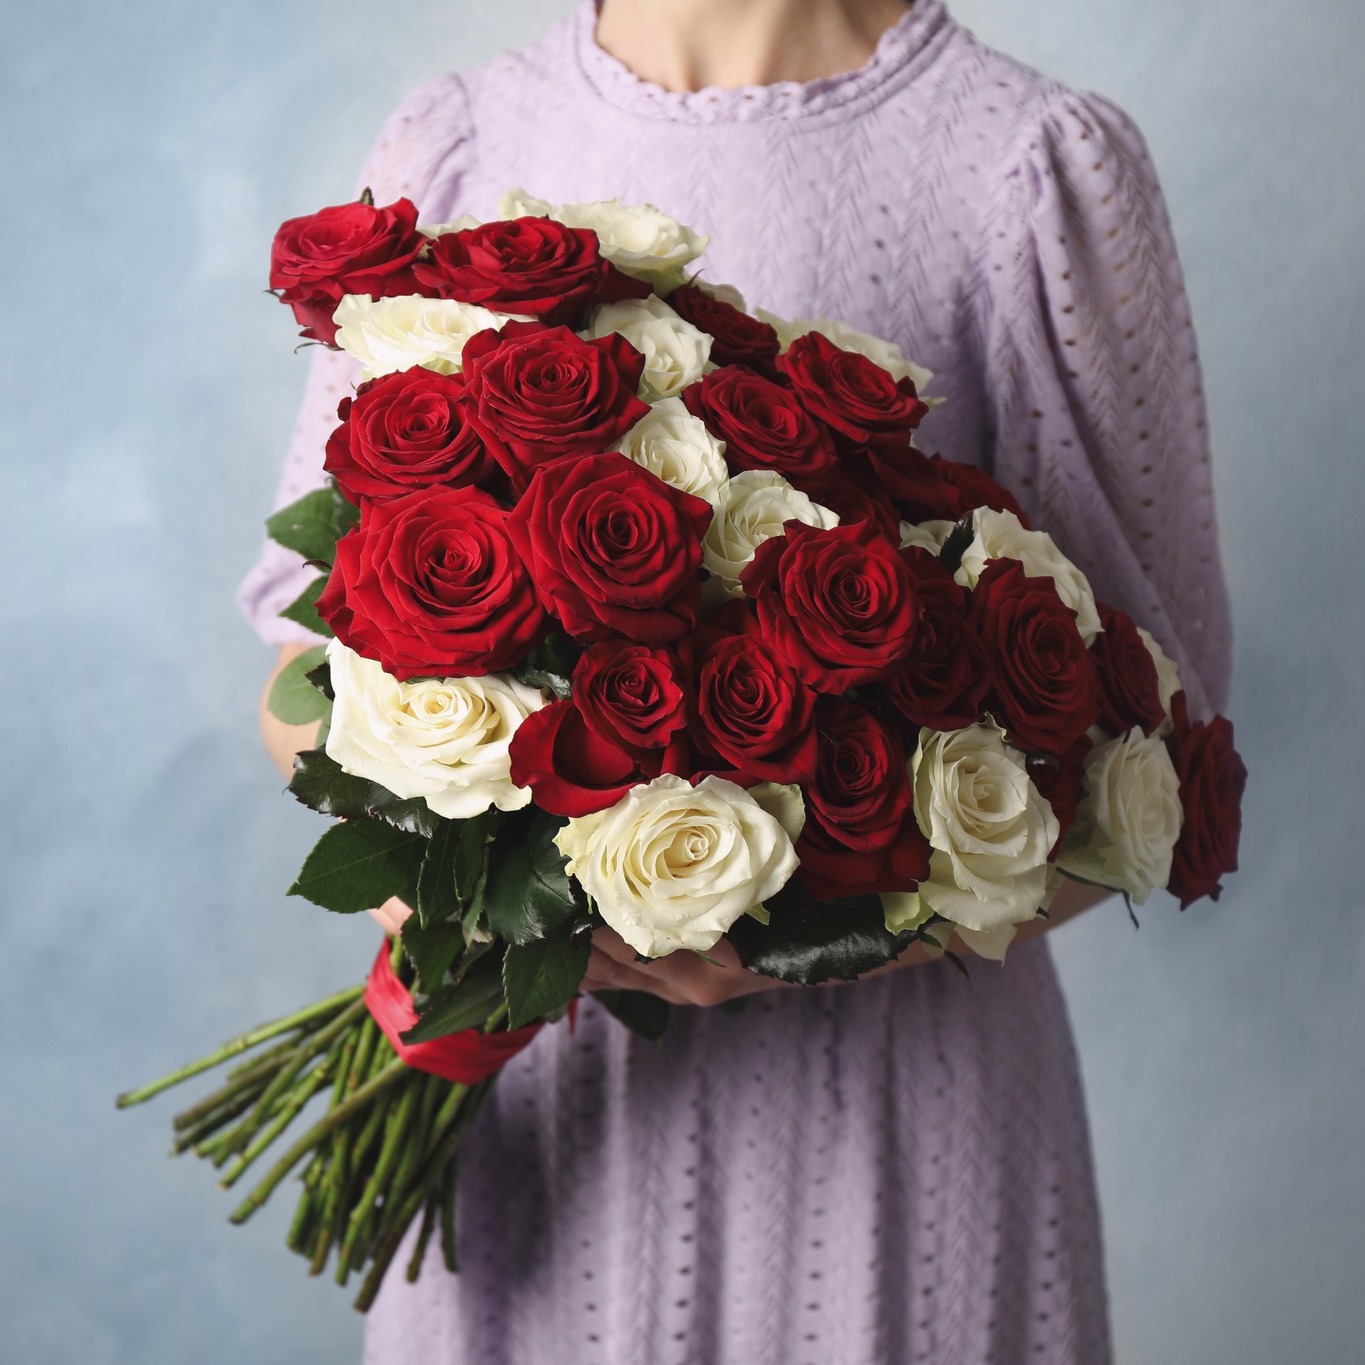 Flowers.ua – сервіс доставки квітів та подарунків в Одесі та всій Україні